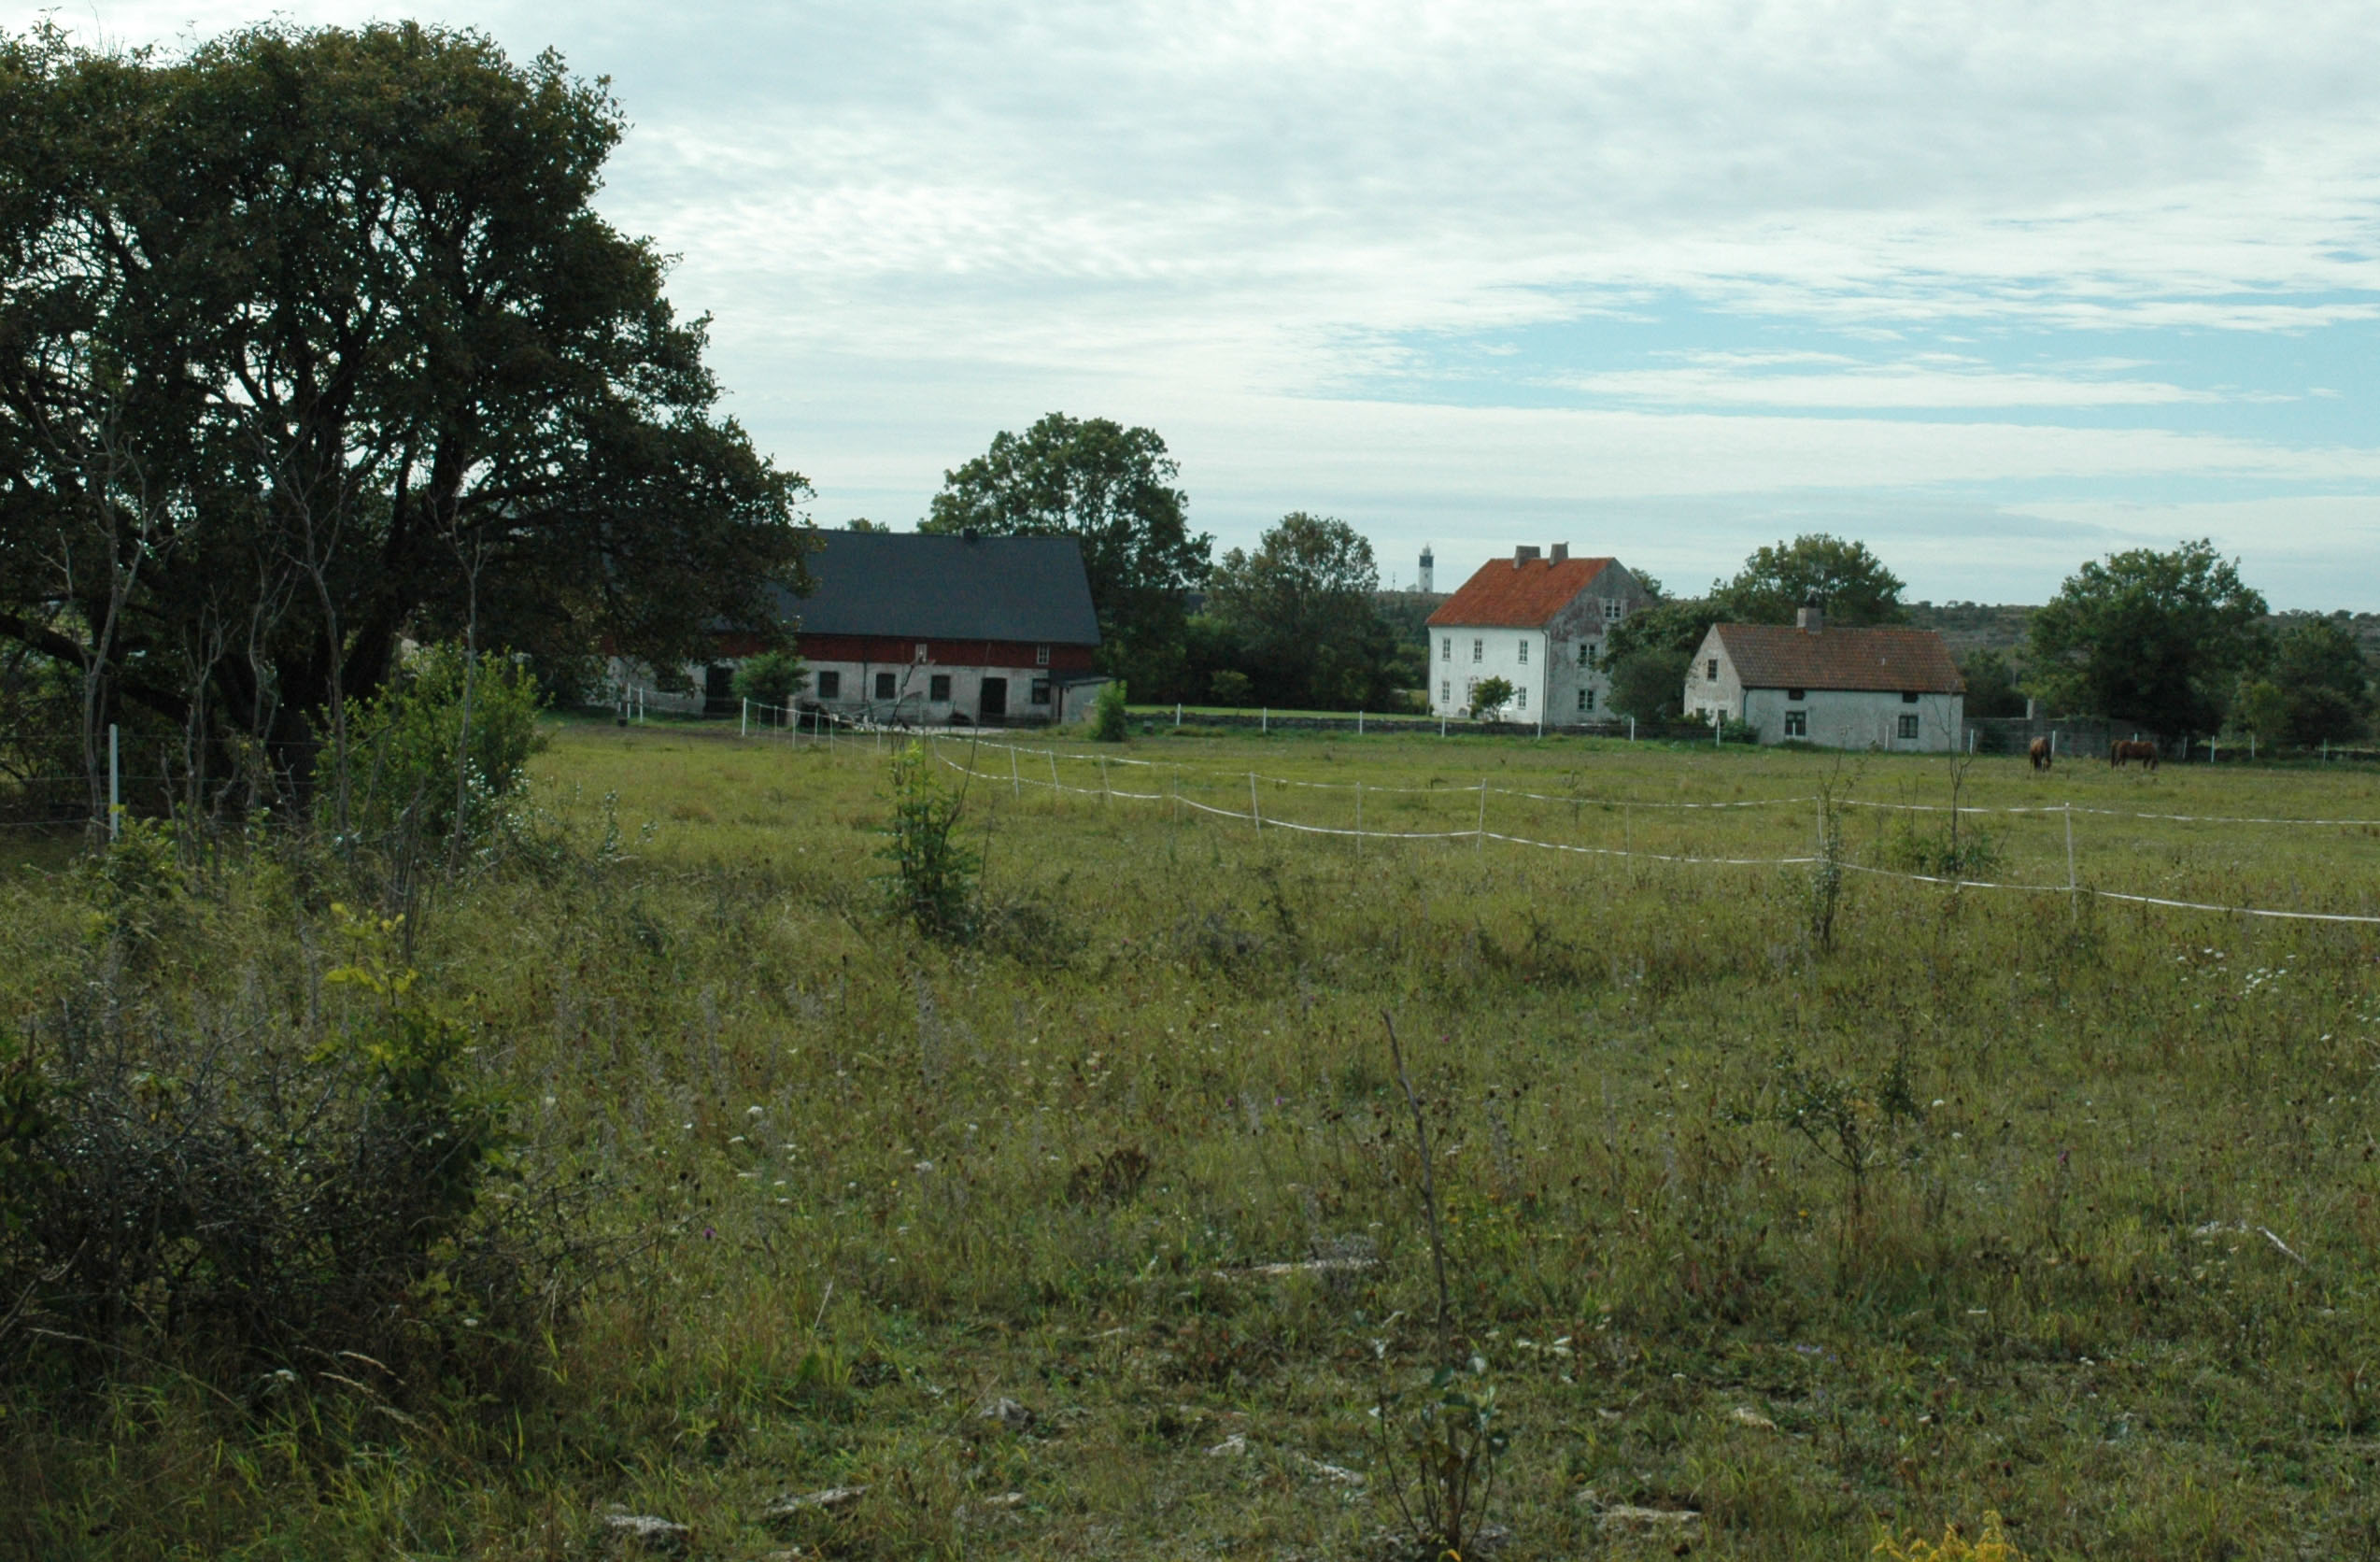 På gården finns det hästar och två vita hus samt en lada.